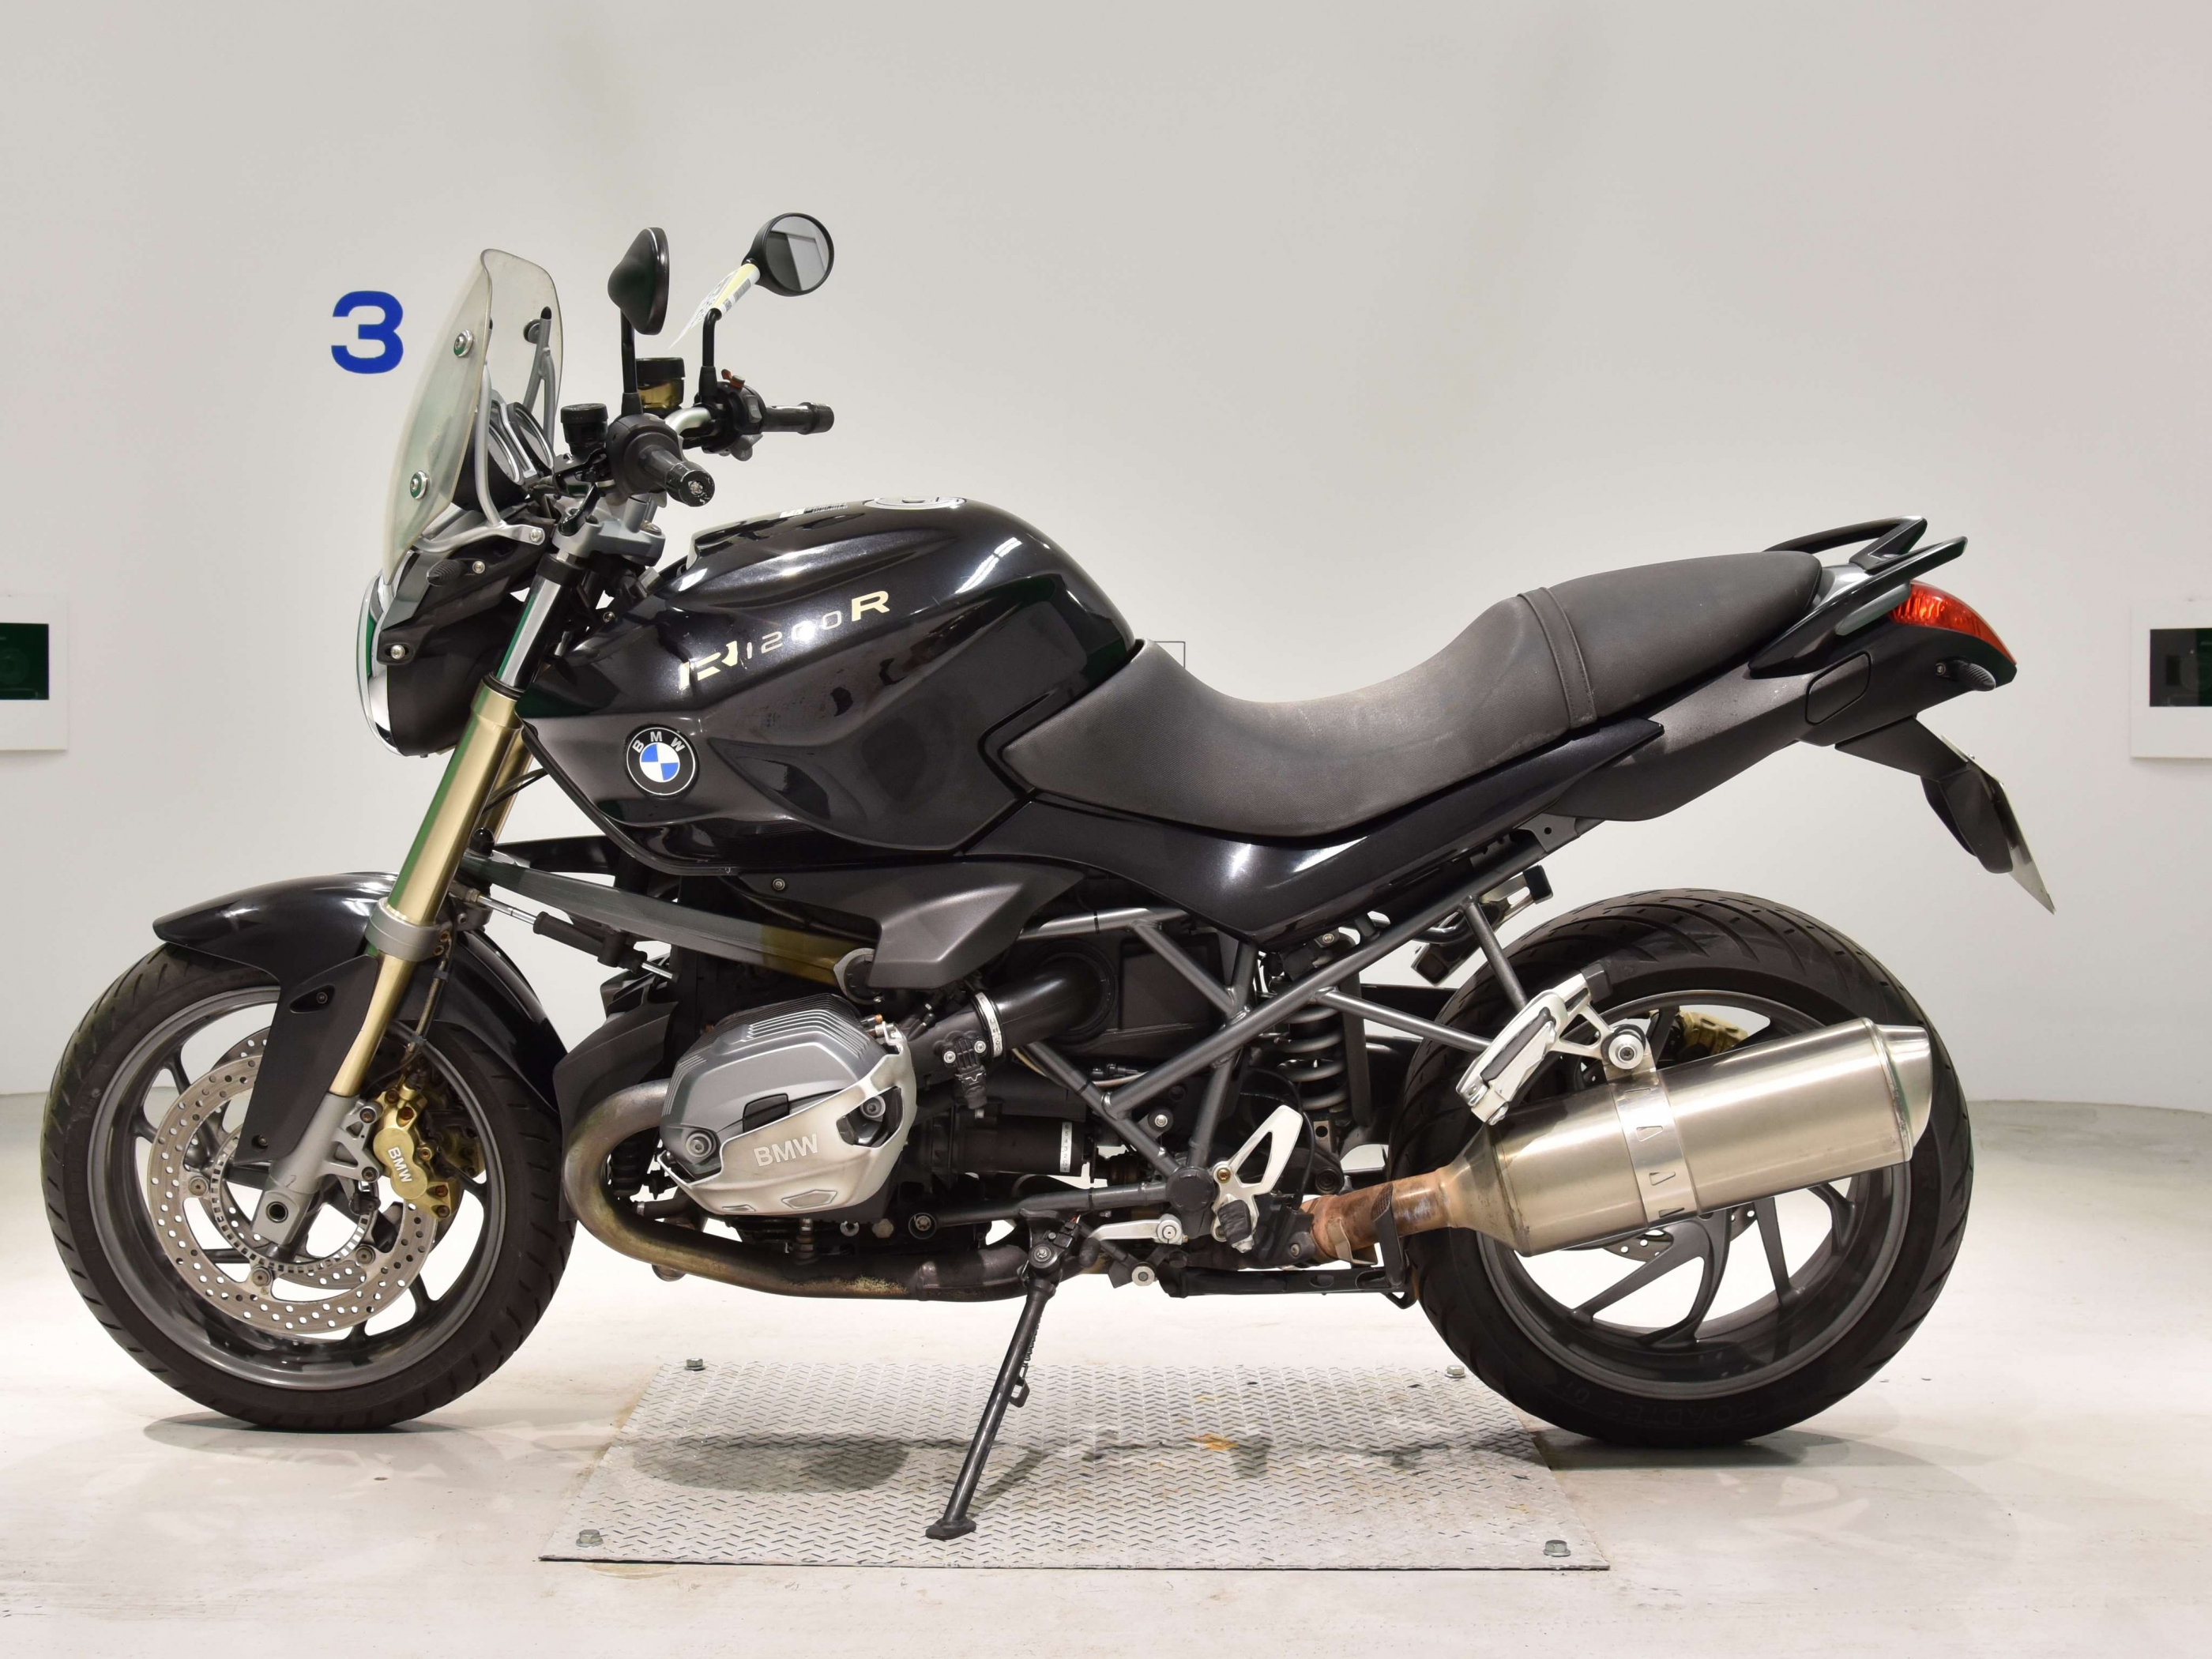 Купить мотоцикл BMW R1200R 2013 фото 1